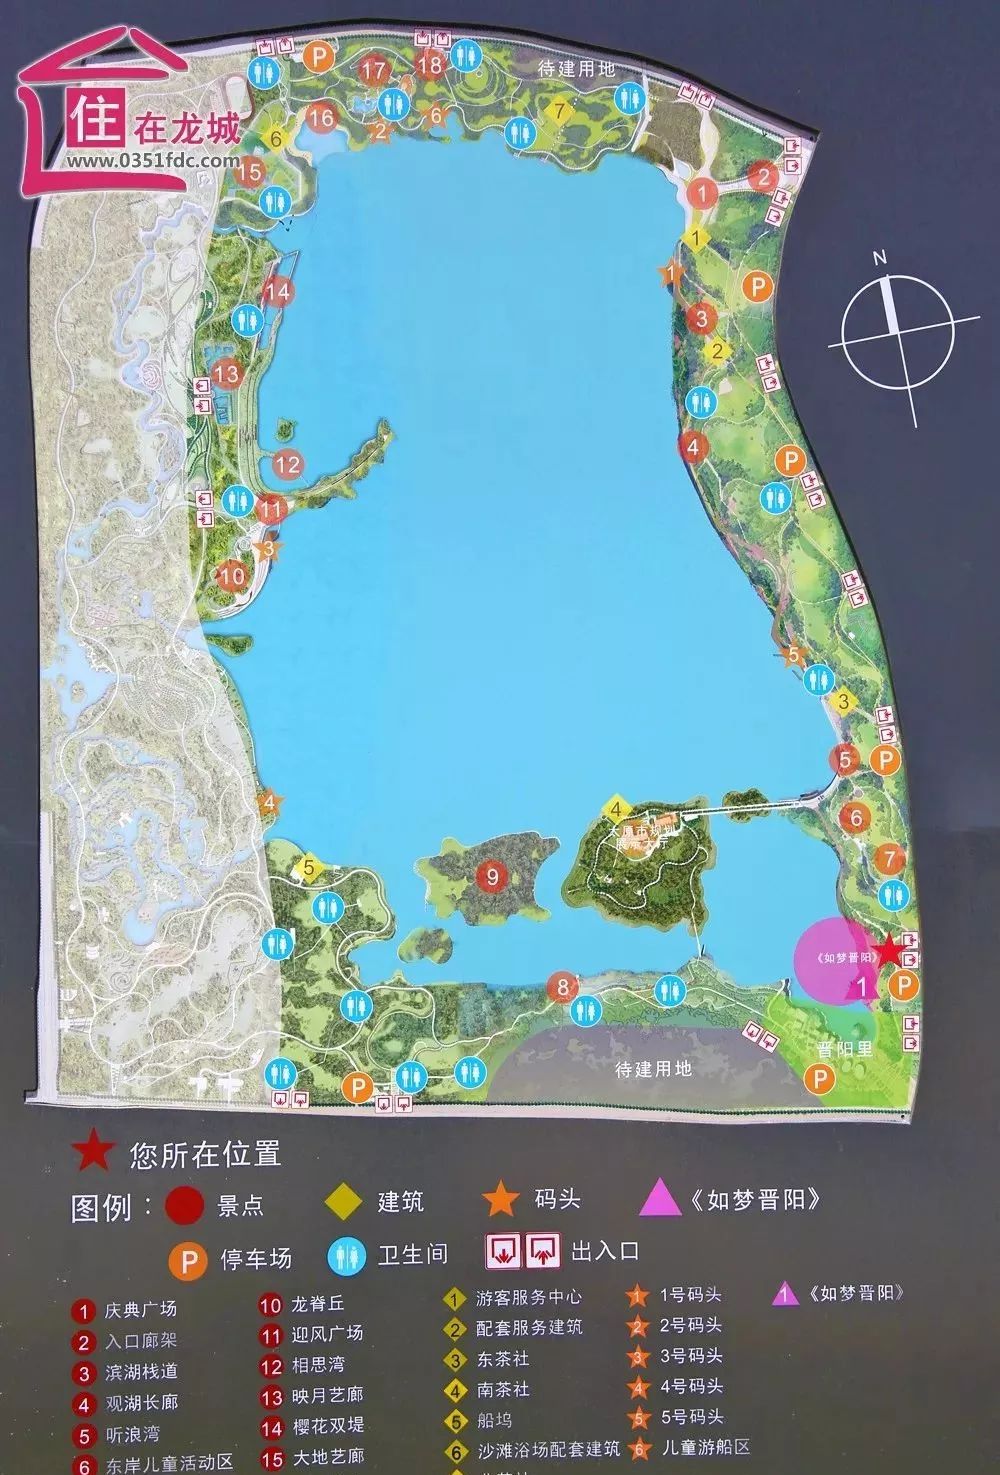 晋阳湖终于开园了!华北地区最大的水域公园,刷爆你的朋友圈!